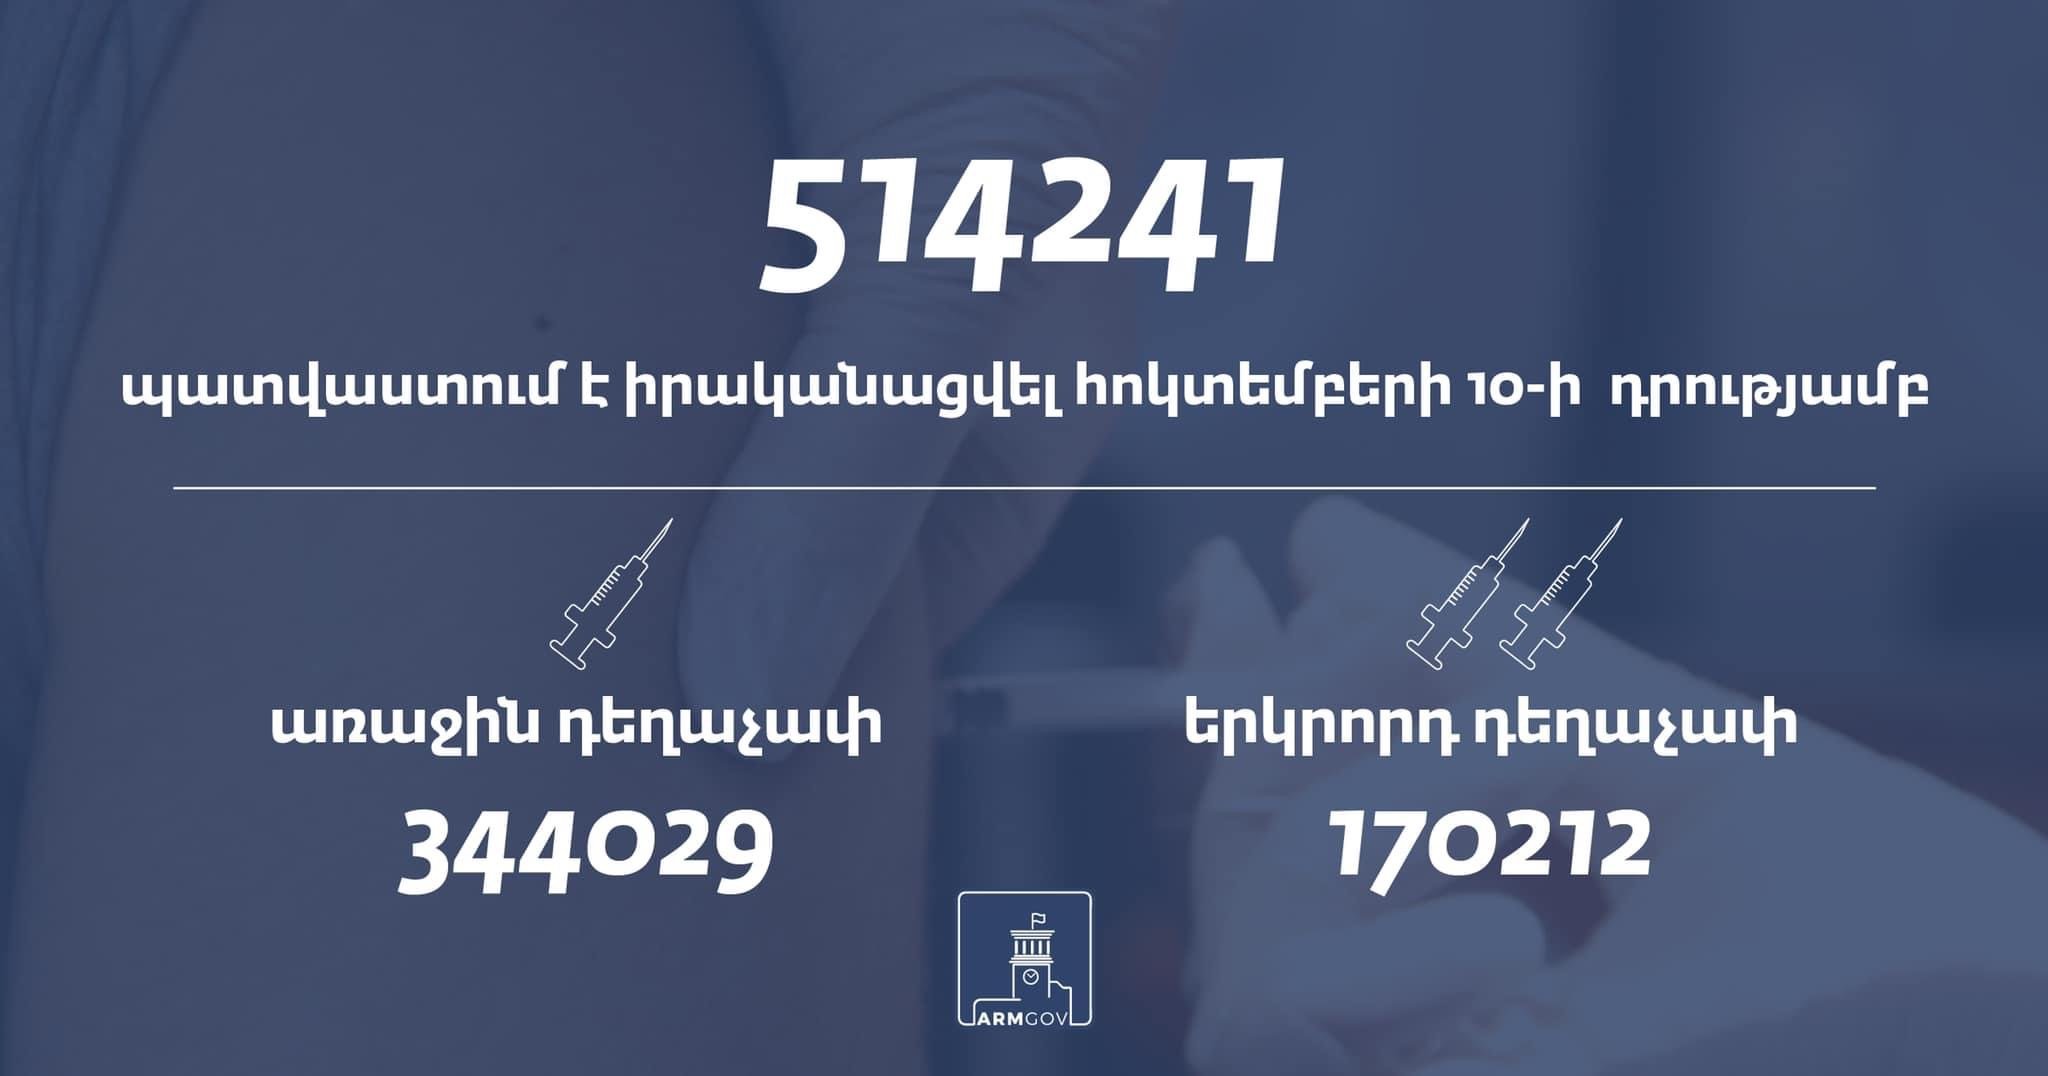 Հայաստանում հոկտեմբերի 10-ի դրությամբ կատարվել է 514241 պատվաստում